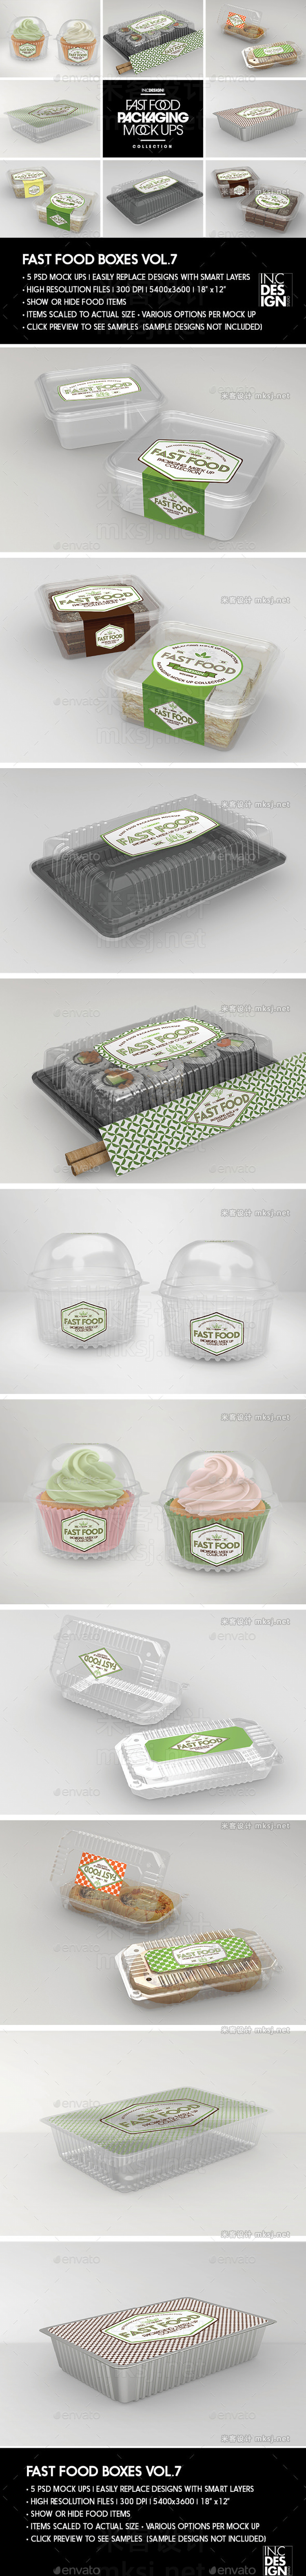 VI贴图 透明塑料包装盒快餐盒冰淇淋杯子糕点盒PS模型mockup样机